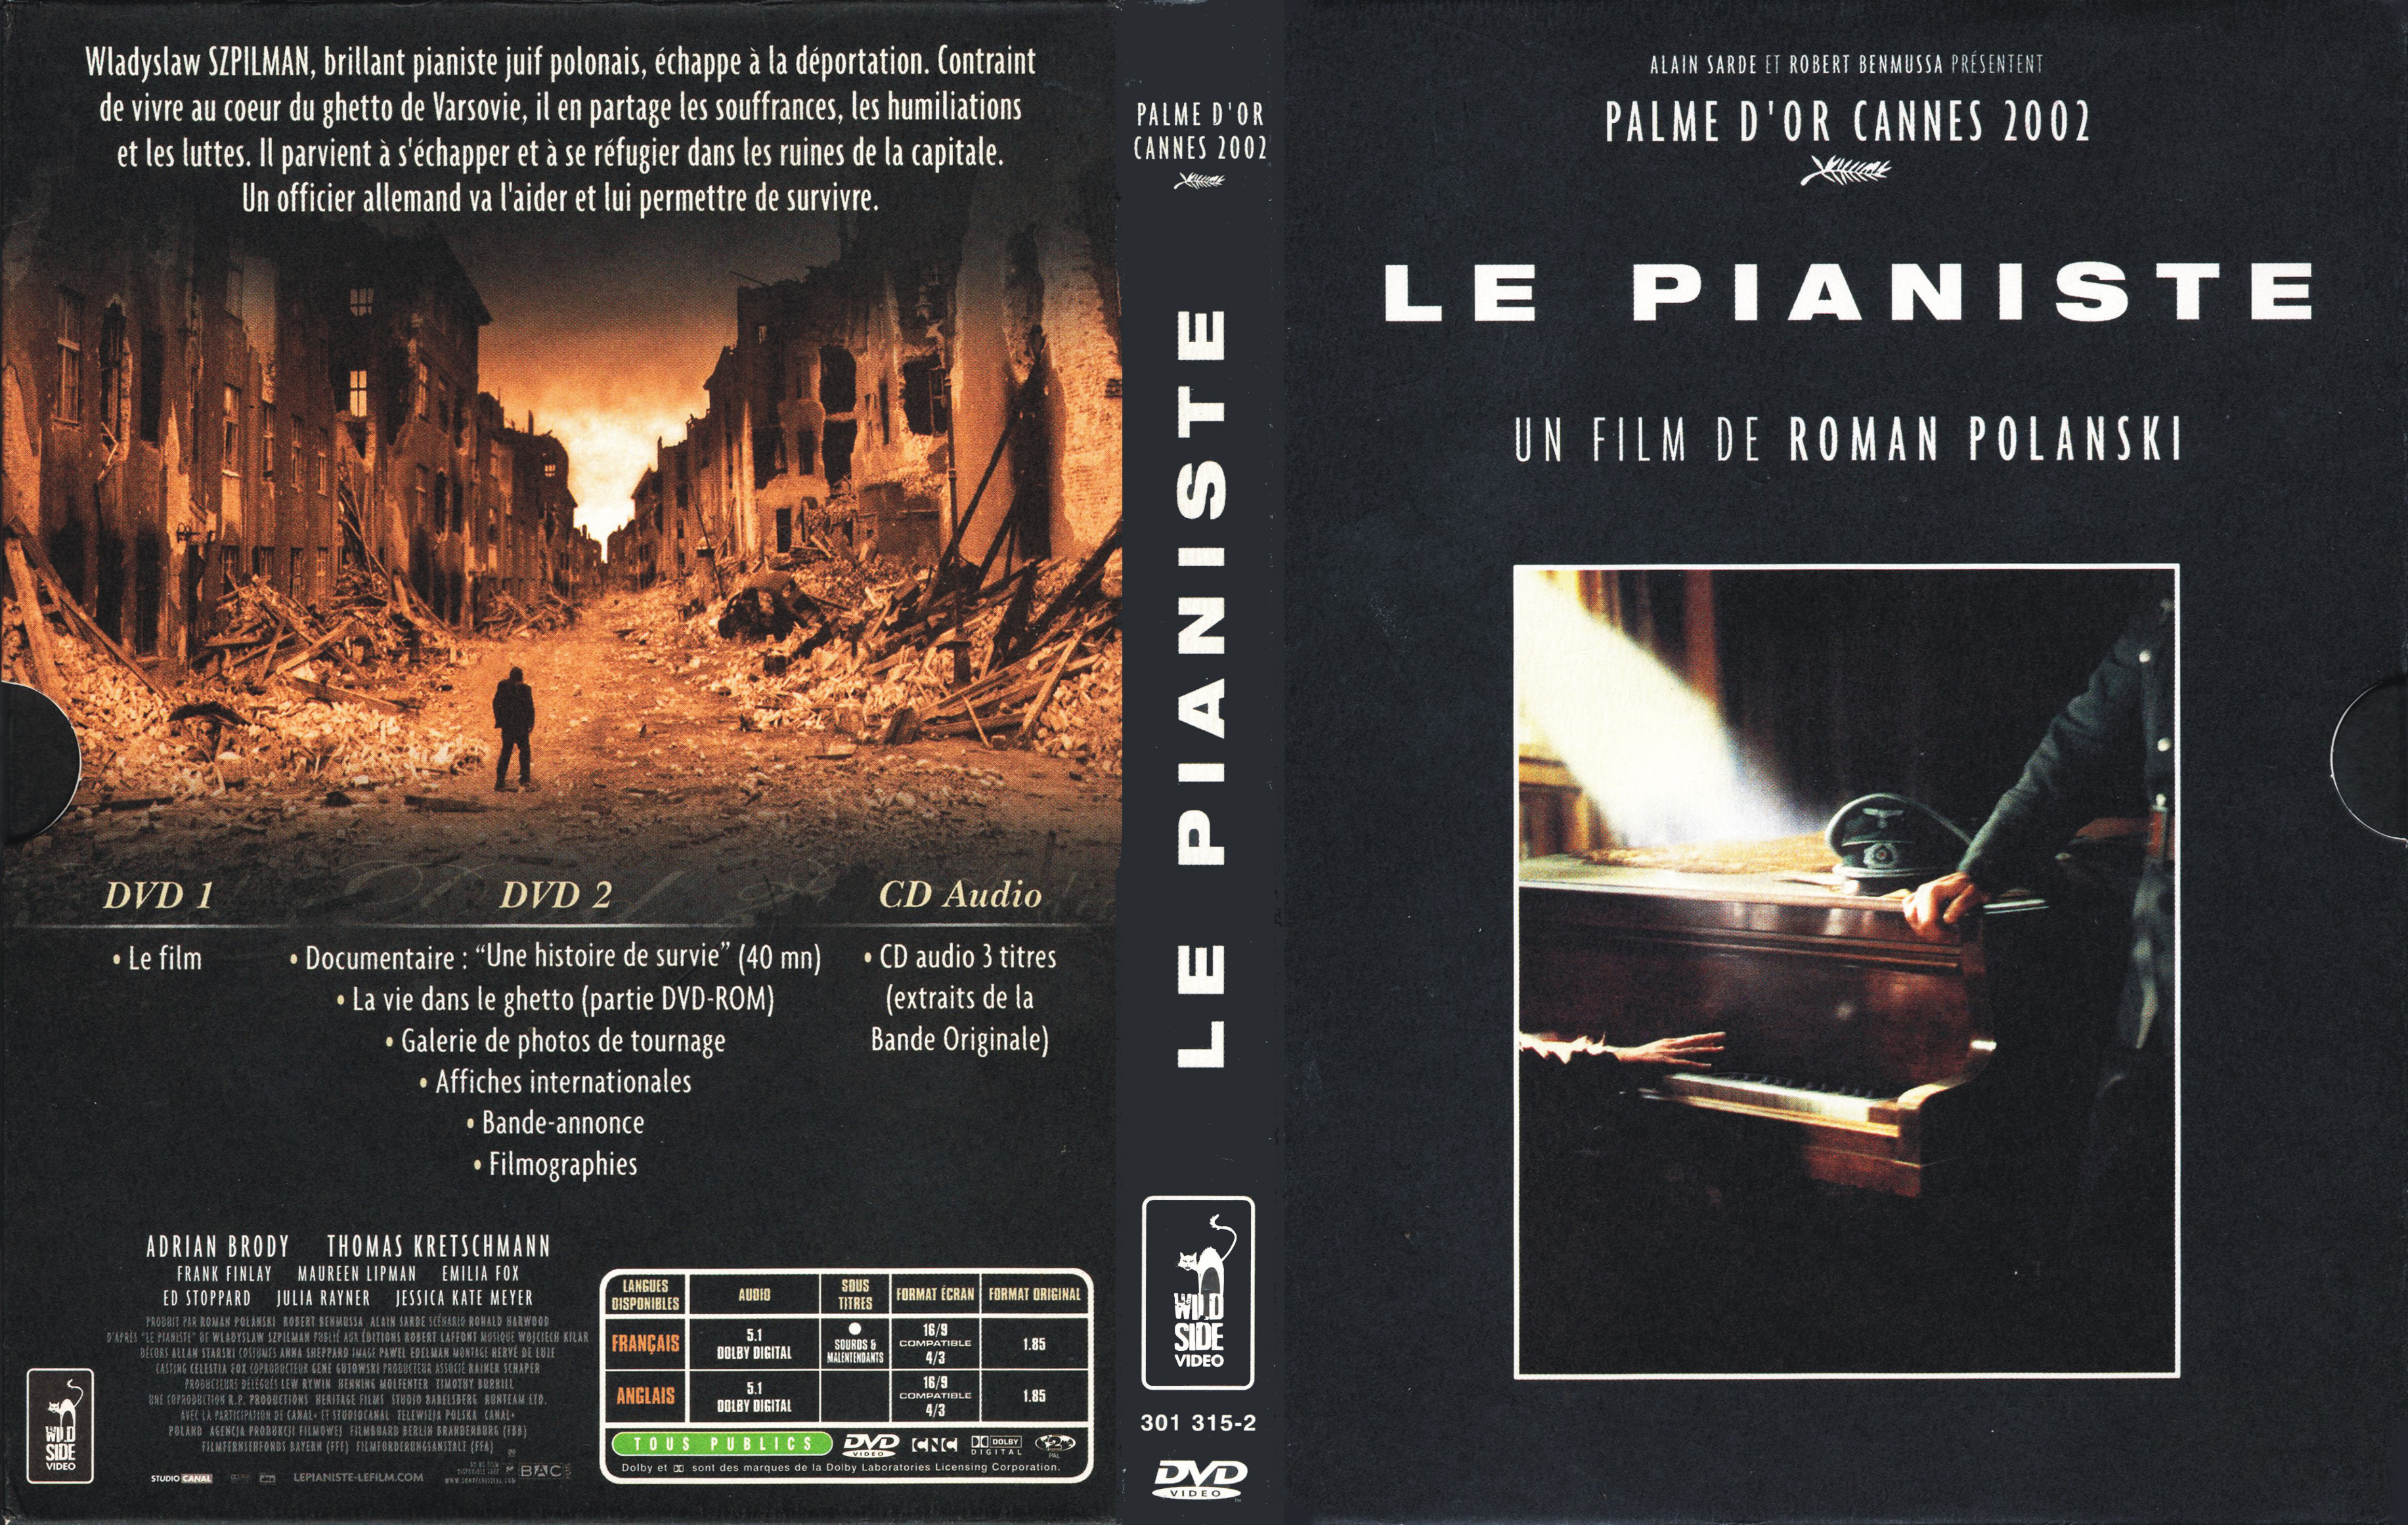 Jaquette DVD Le pianiste v3